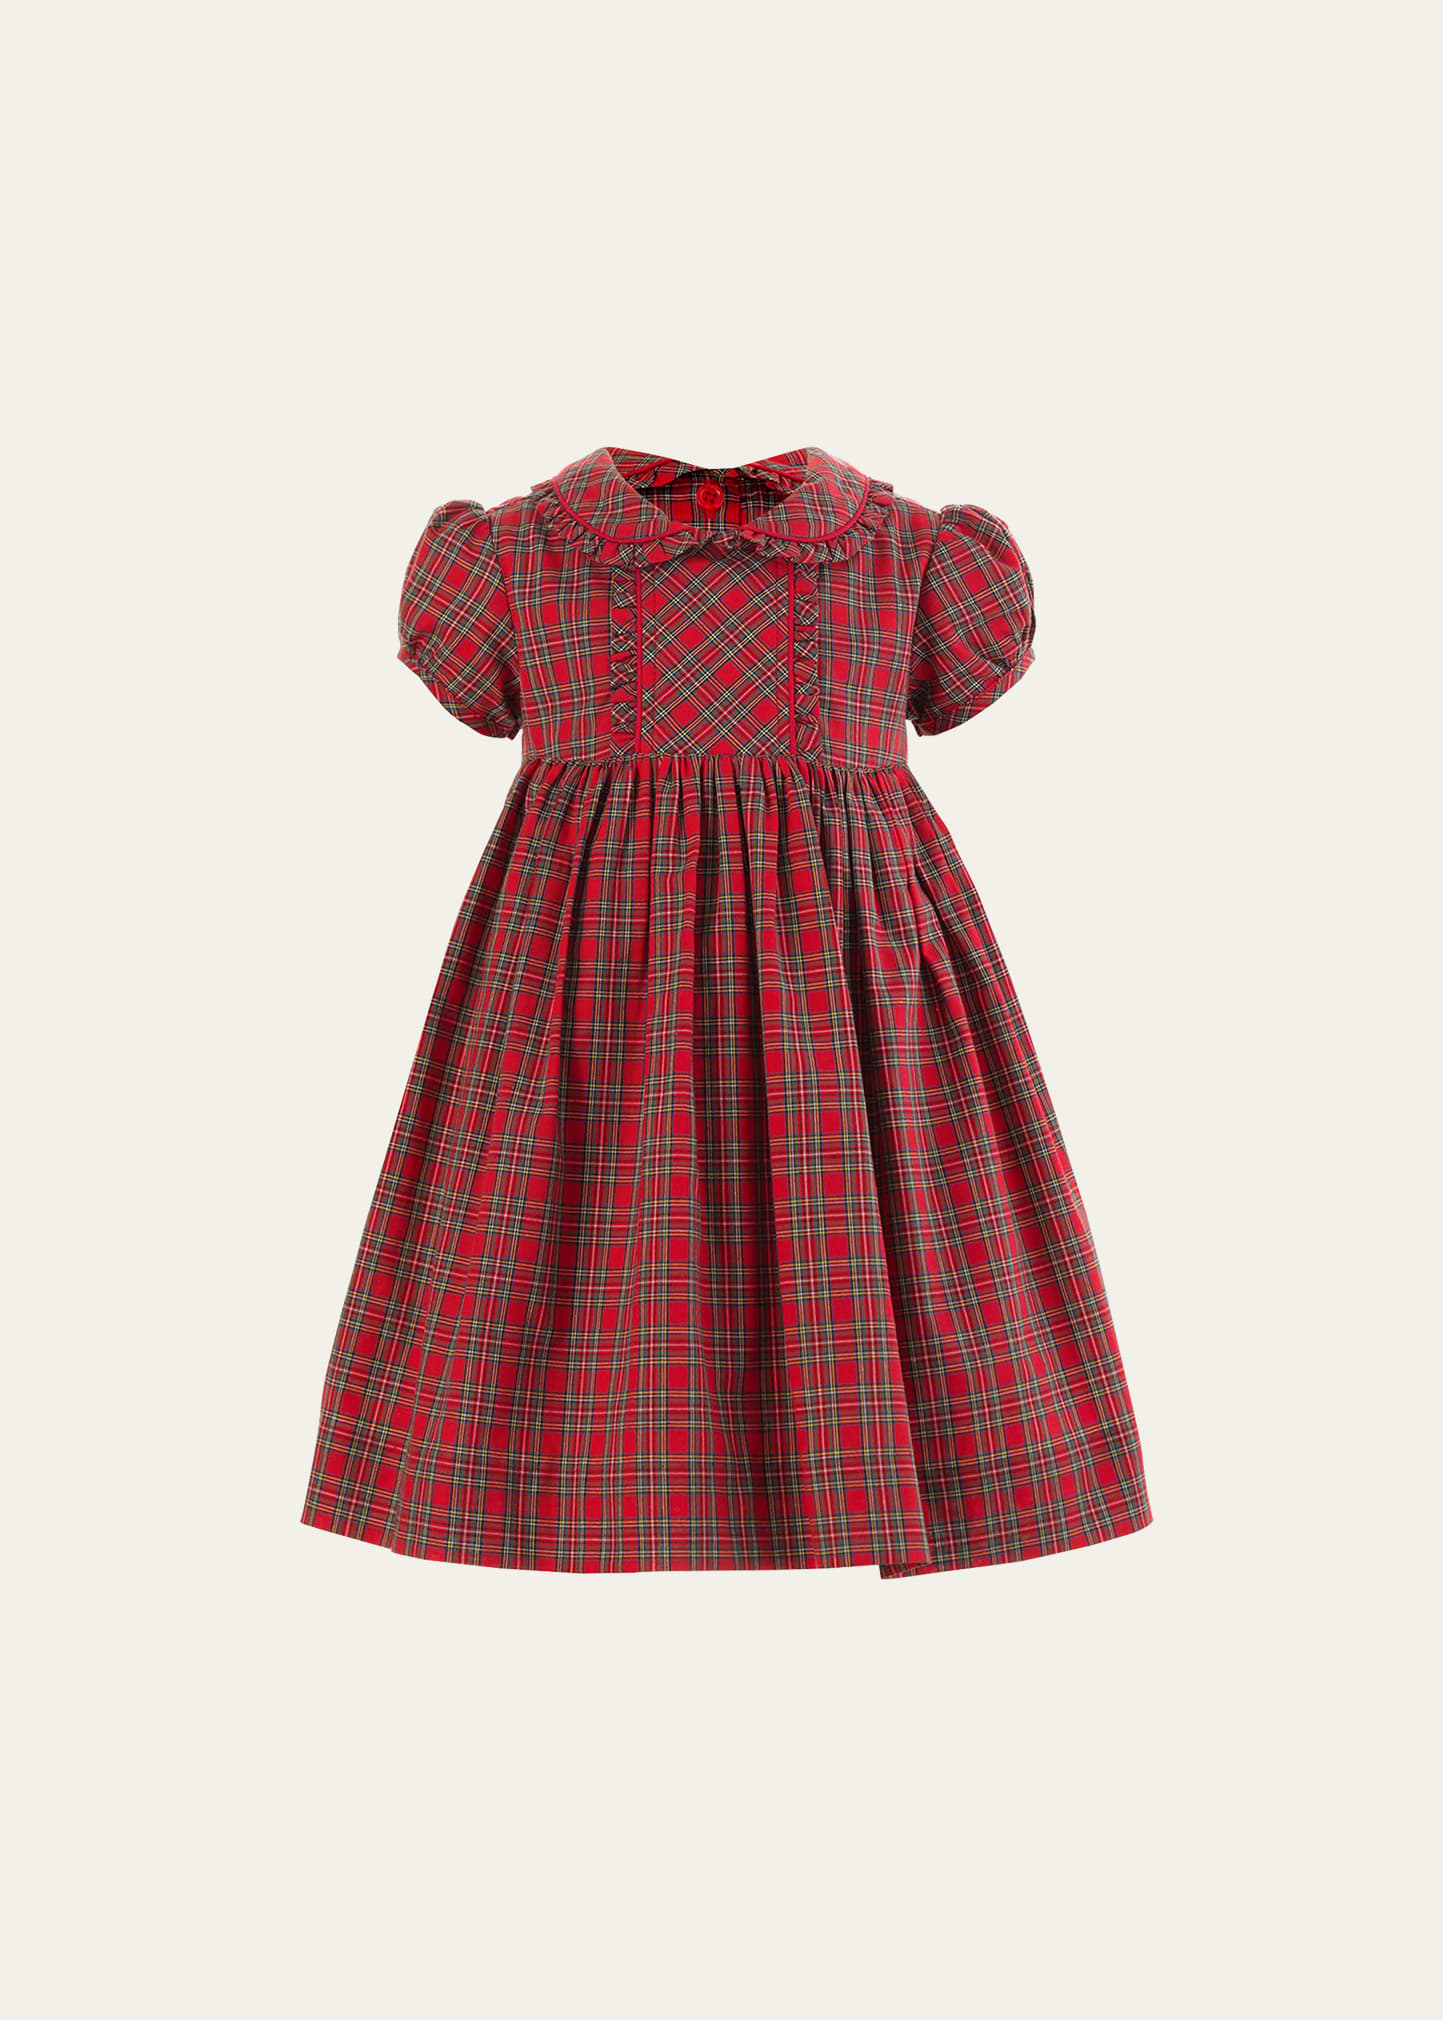 Girl's Tartan-Print Frill Dress W/ Bloomers, Size 6M-24M